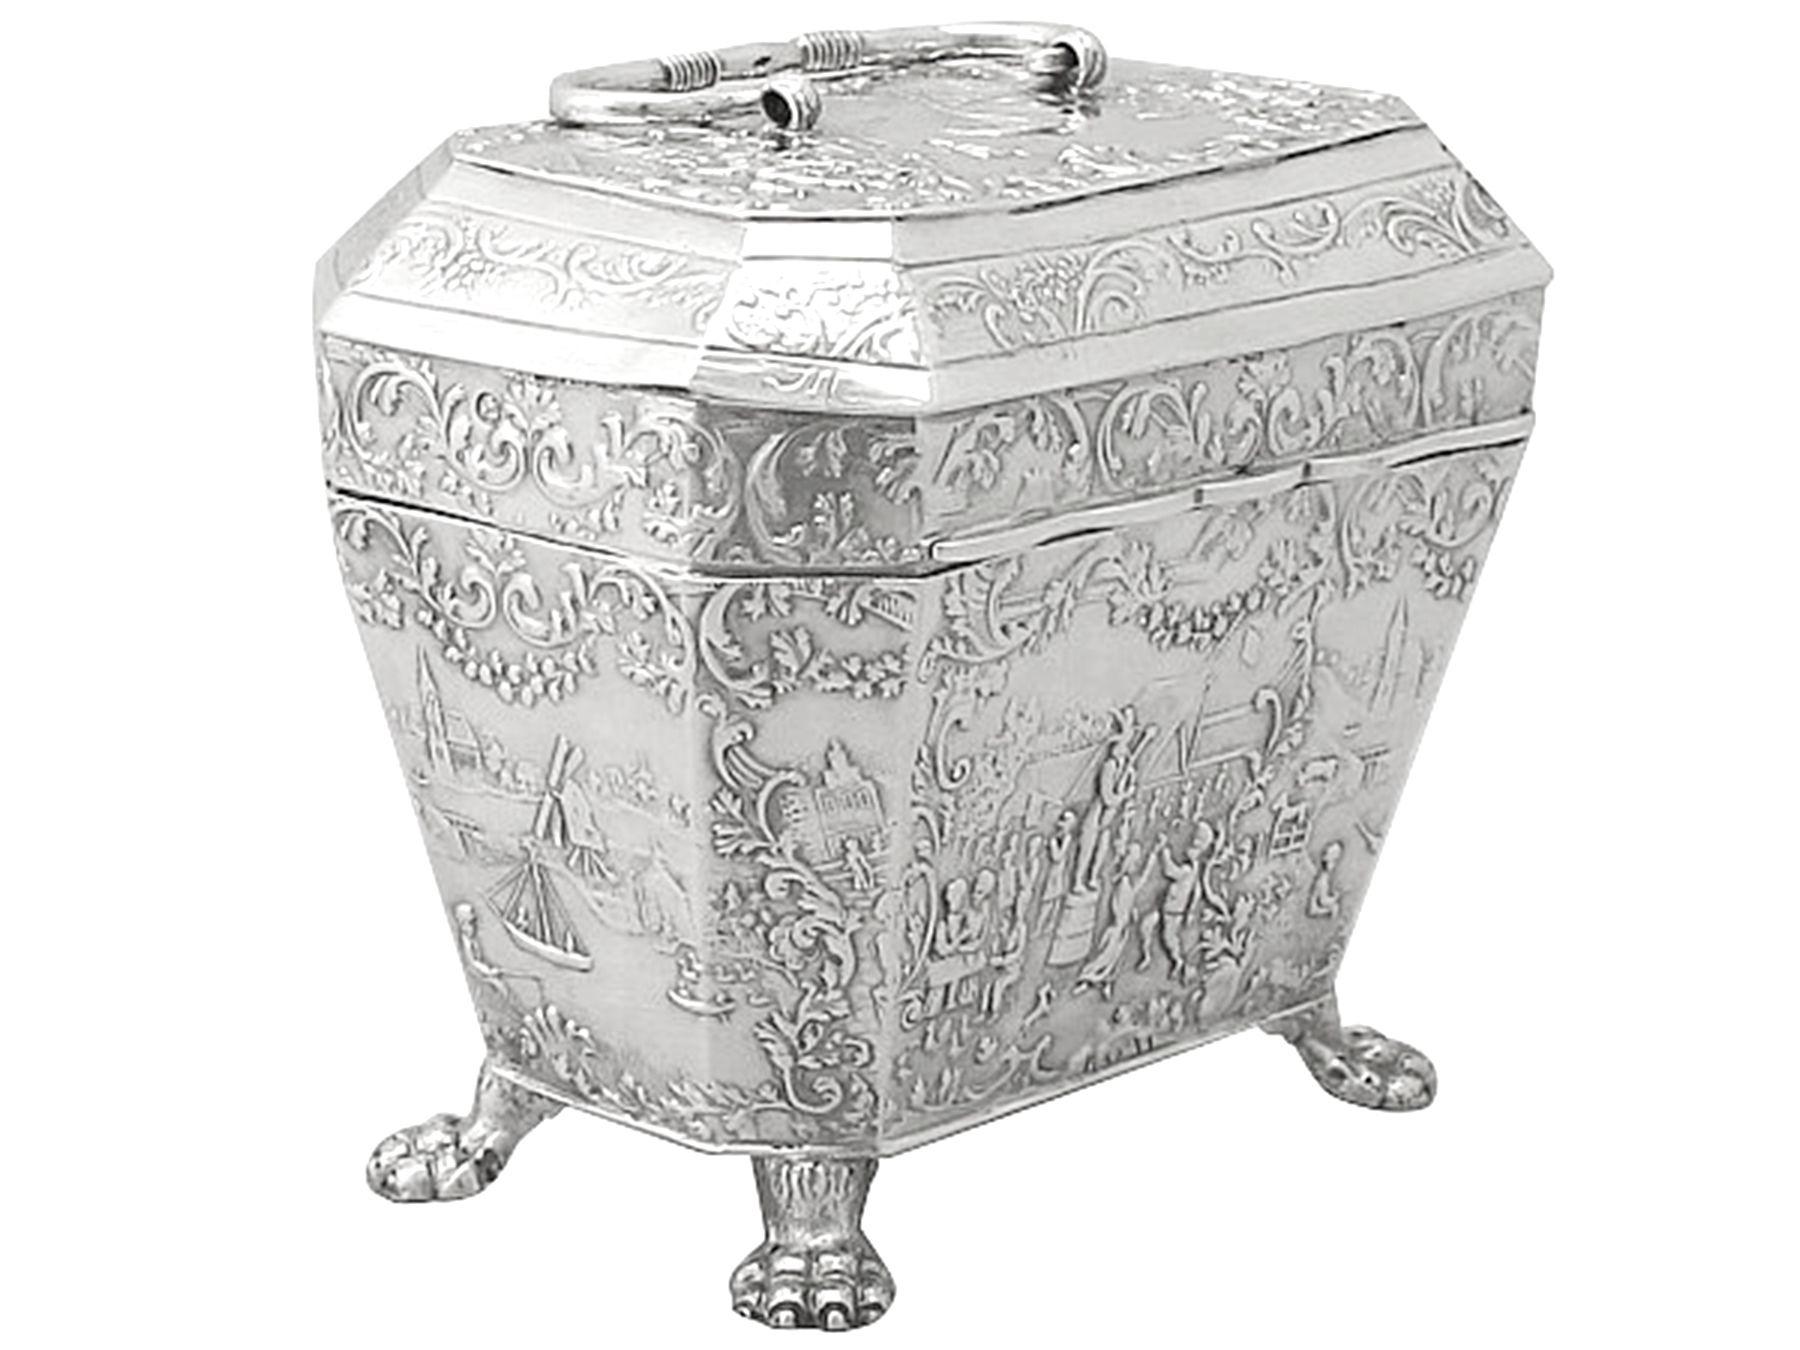 Eine außergewöhnliche, feine und beeindruckende Teedose aus antikem holländischem Silber; eine Ergänzung zu unserer Silberteegeschirr-Sammlung

Diese außergewöhnliche Teedose aus holländischem Silber wurde realistisch in Form eines klassischen